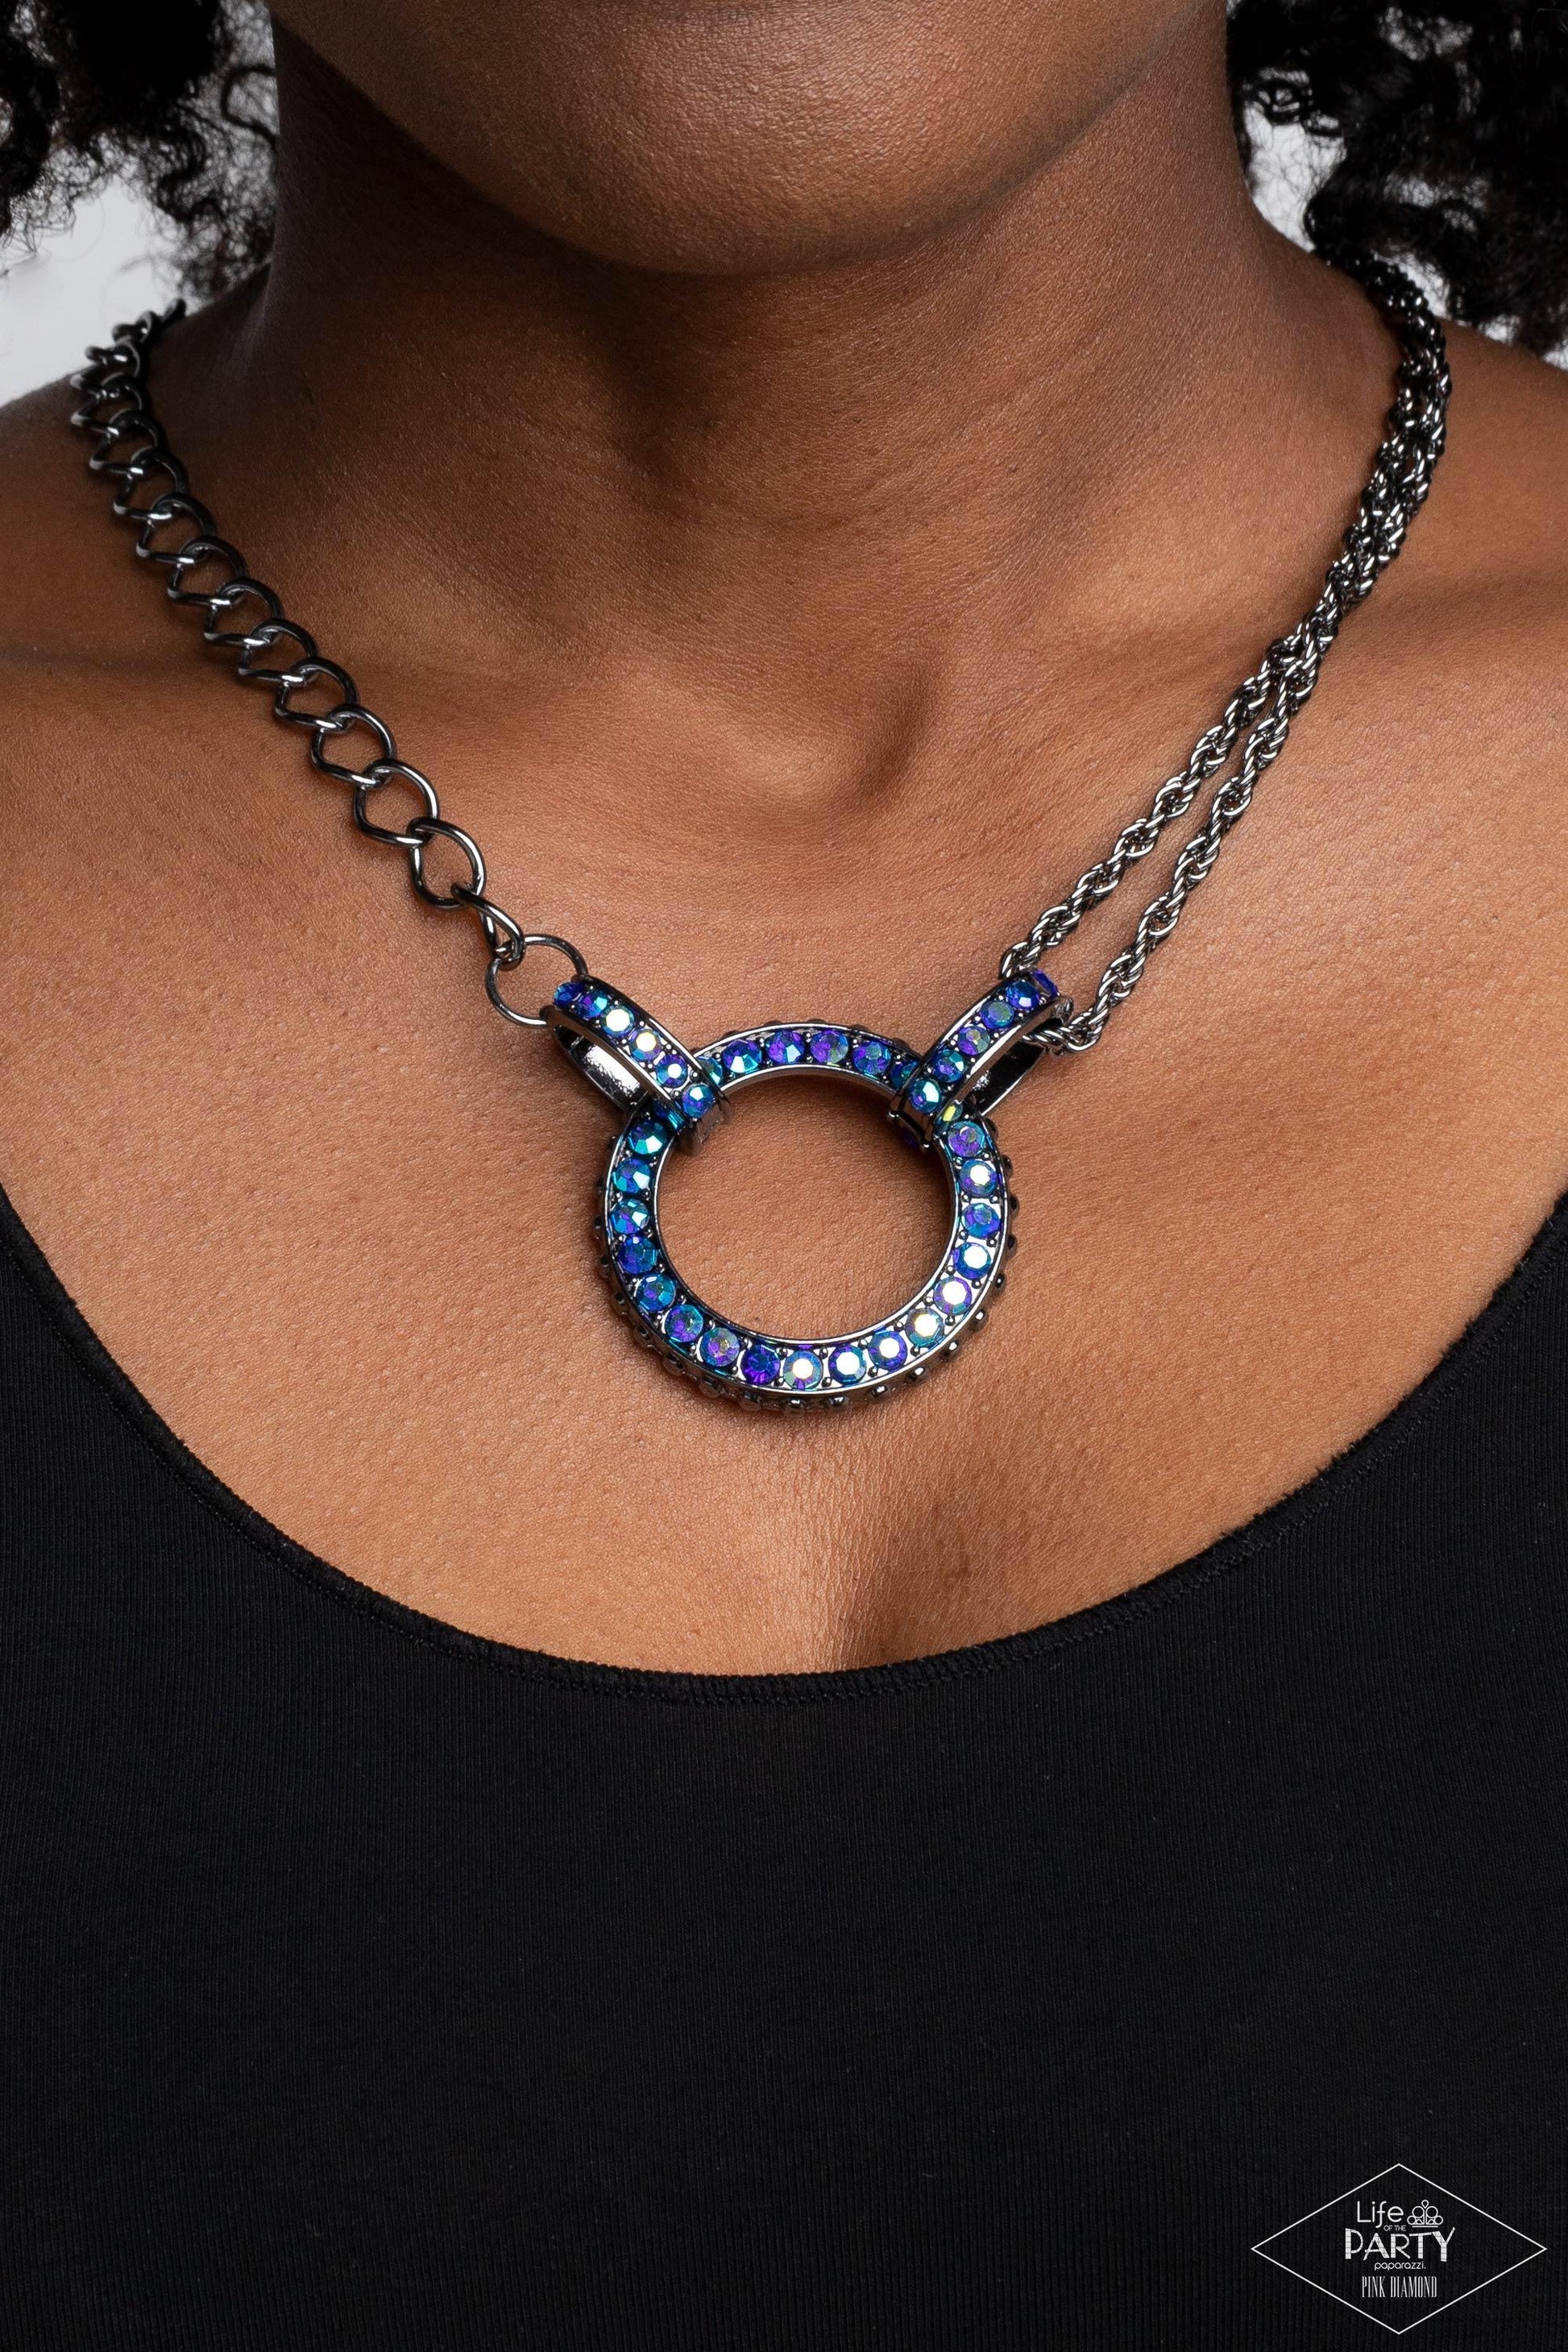 Paparazzi Accessories - Razzle Dazzle - Blue Necklace - Bling by JessieK